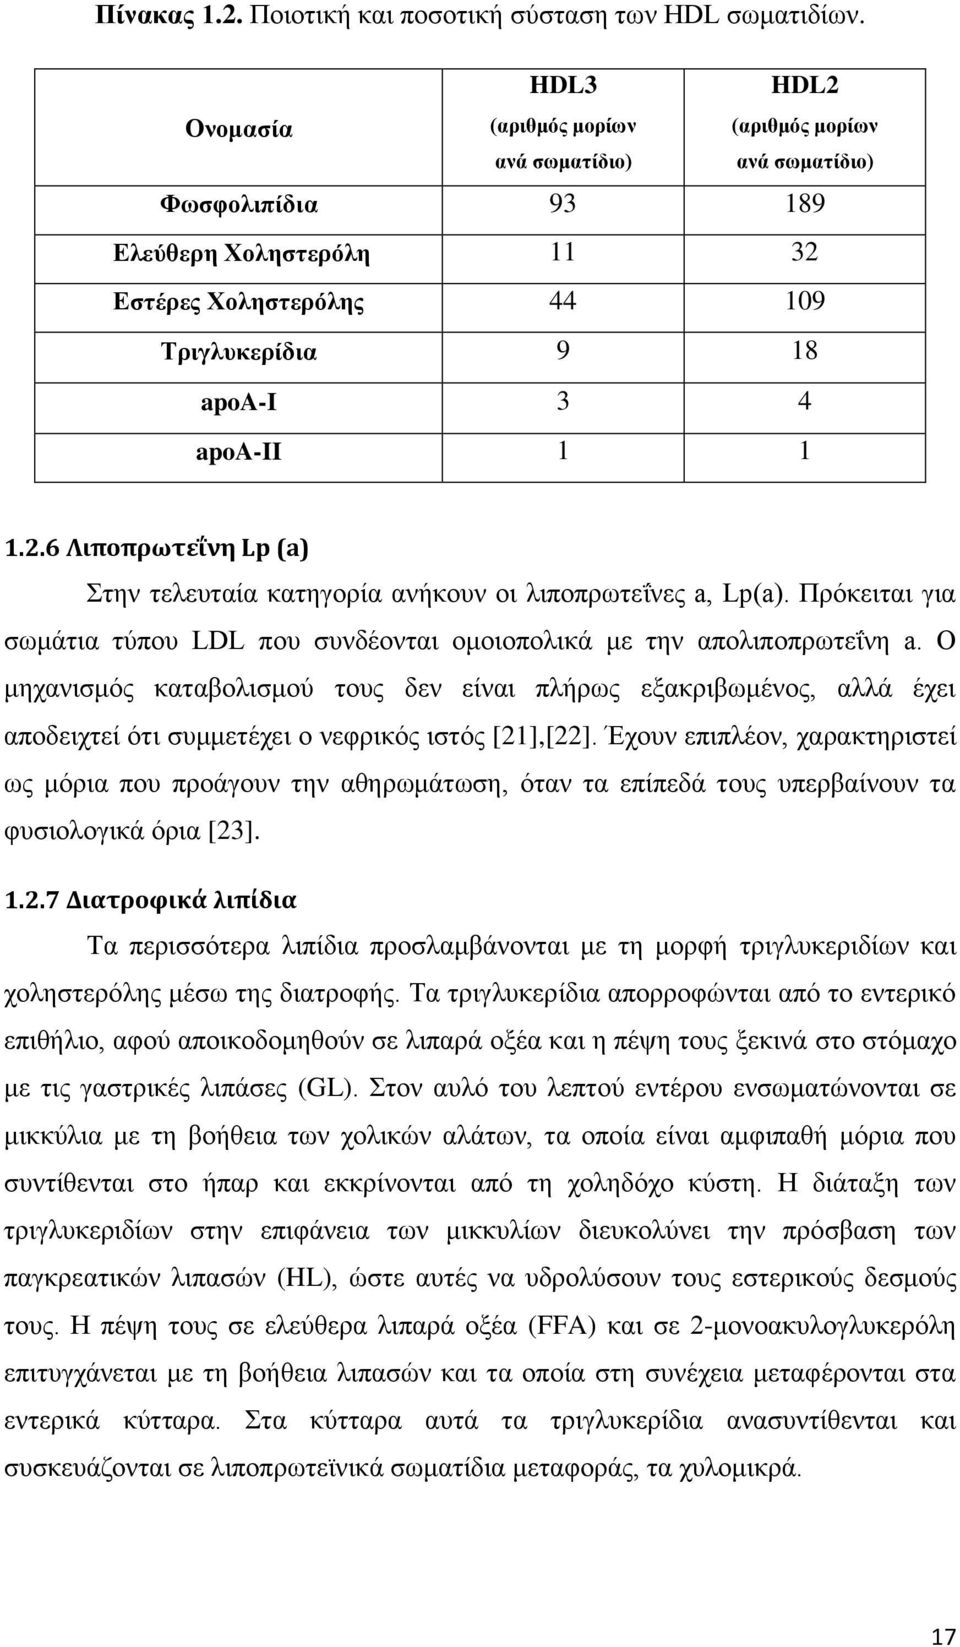 2.6 Λιποπρωτεΐνη Lp (a) Στην τελευταία κατηγορία ανήκουν οι λιποπρωτεΐνες a, Lp(a). Πρόκειται για σωμάτια τύπου LDL που συνδέονται ομοιοπολικά με την απολιποπρωτεΐνη a.